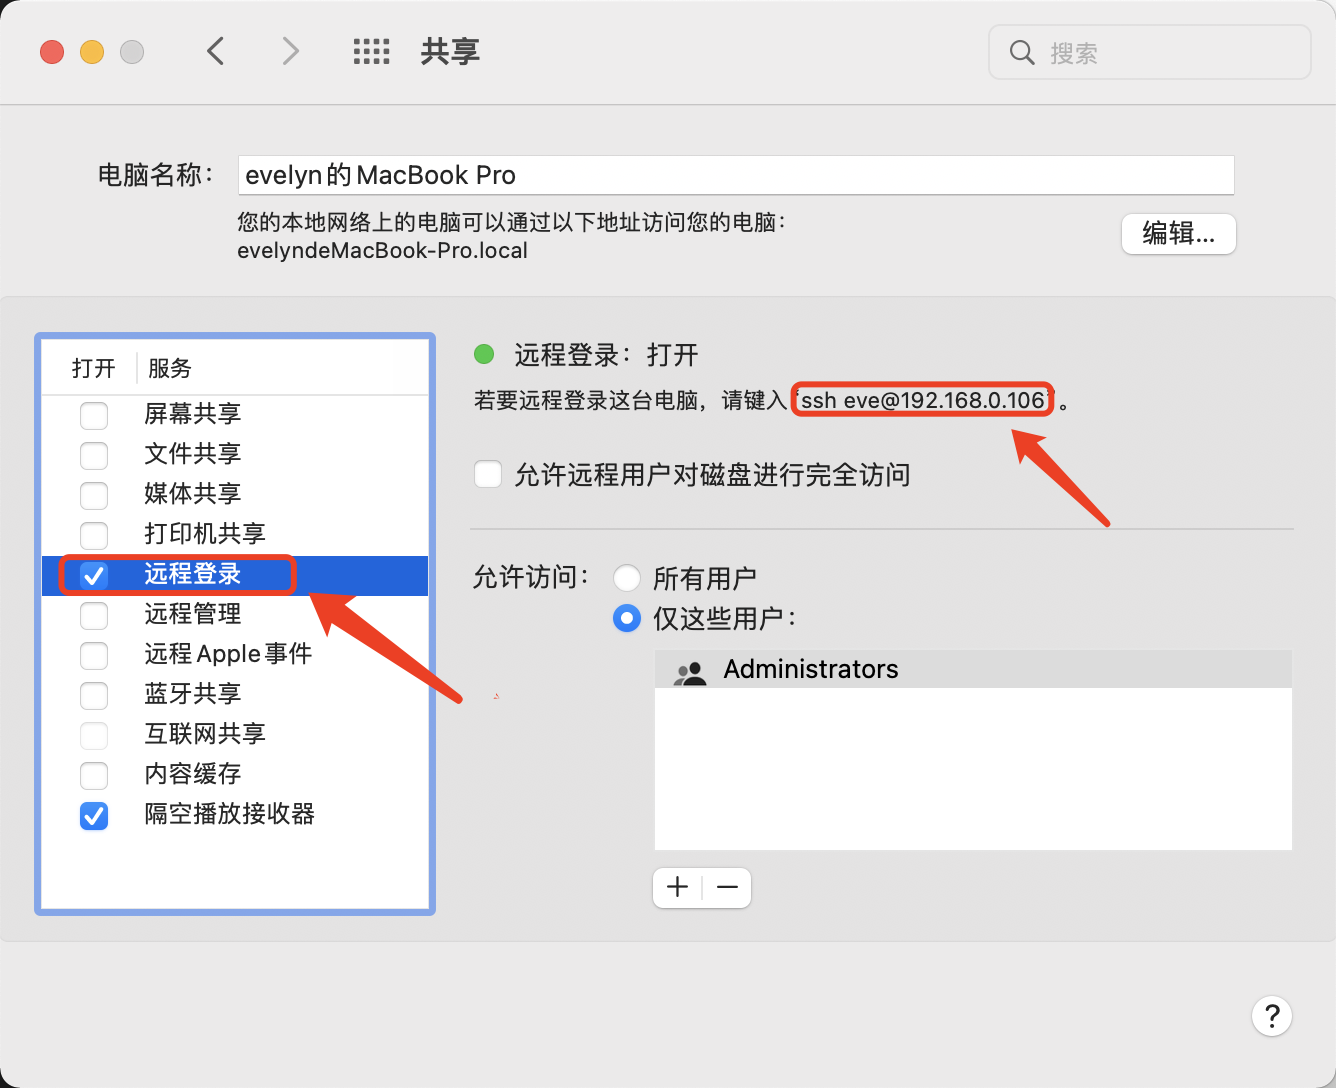 公网使用SSH远程登录macOS服务器的过程(内网穿透)